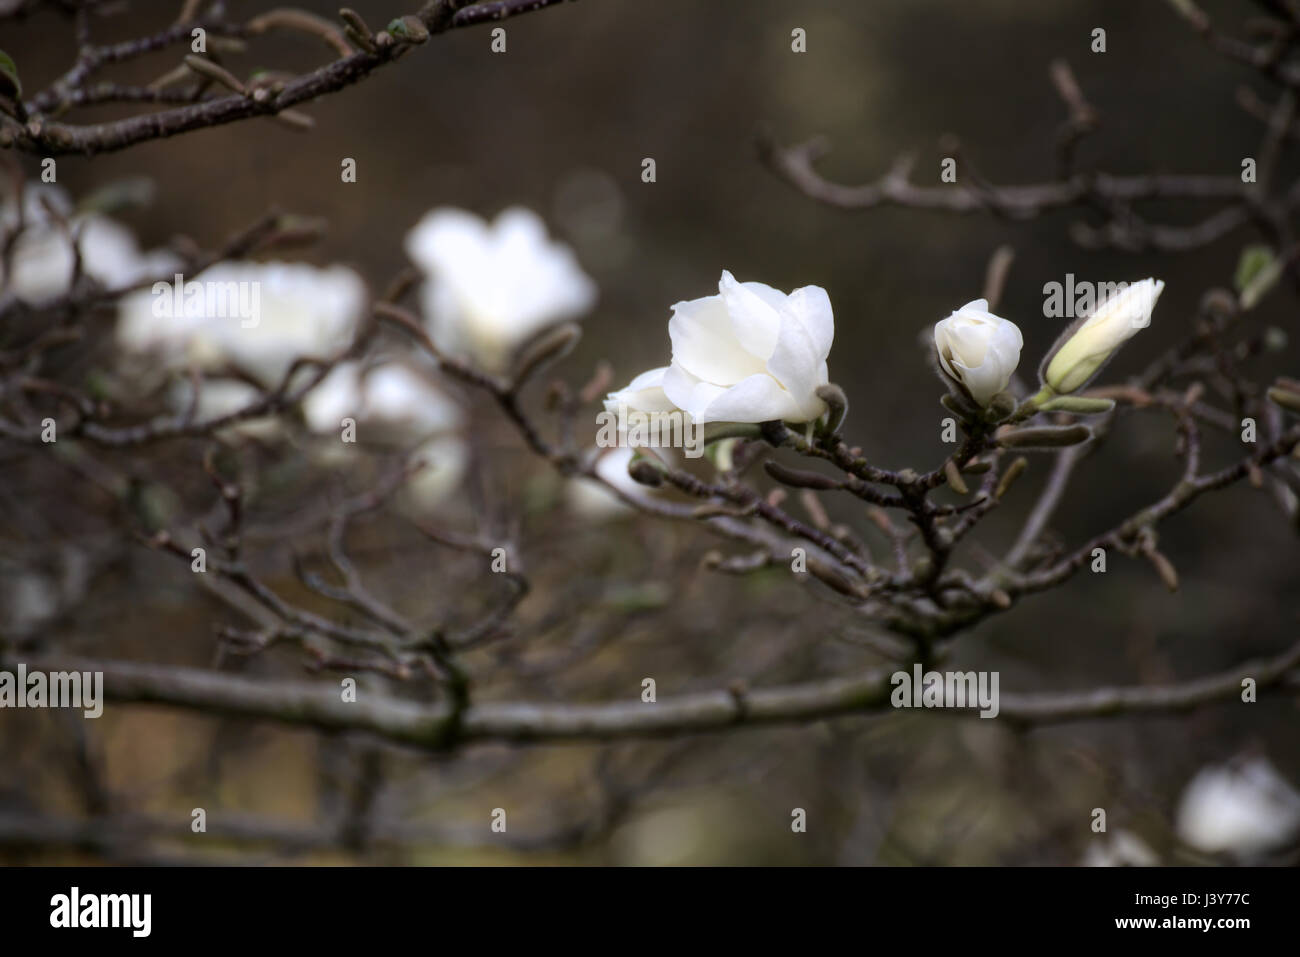 Magnolia kobus, known as mokryeon, with white blossoms. Stock Photo